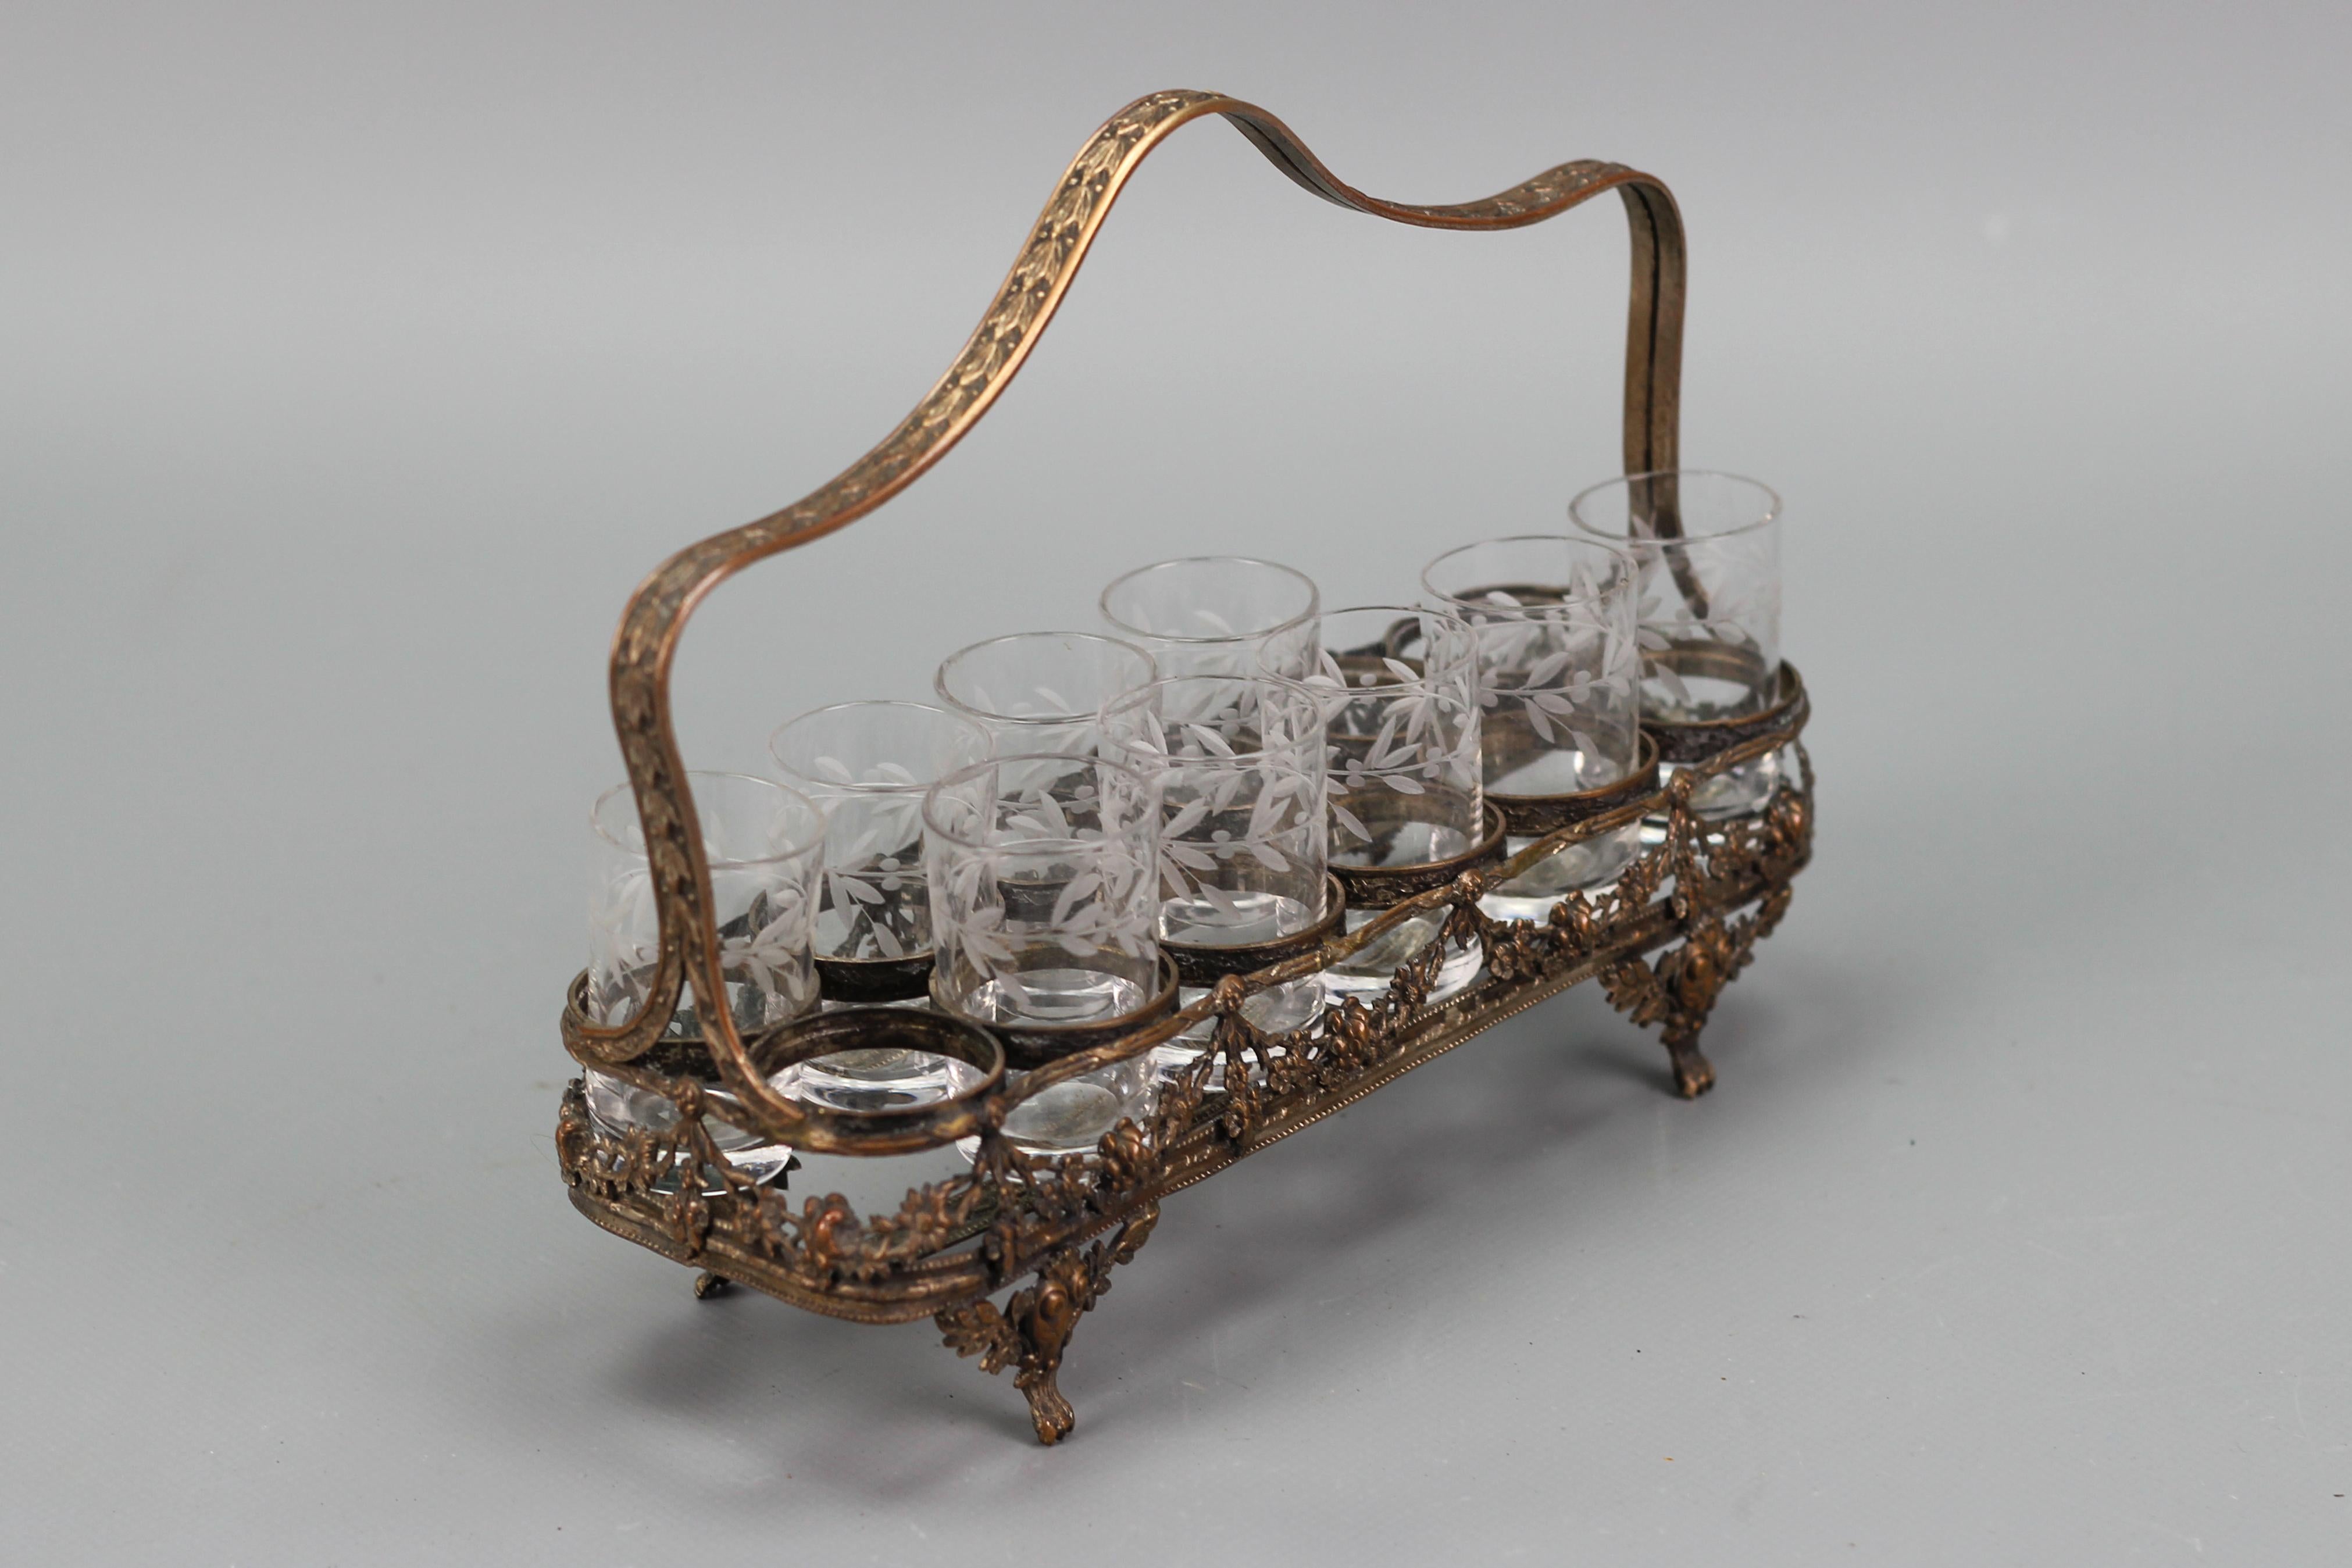 Antikes französisches Jugendstil-Servierbesteck mit neun Gläsern und Messingkorb, ca. 1920.
Dieses exquisite Servierset im Jugendstil besteht aus neun Likör- oder Schnapsgläsern aus Klarglas mit geschliffenen Blattdekoren und einem Messingkorb, der